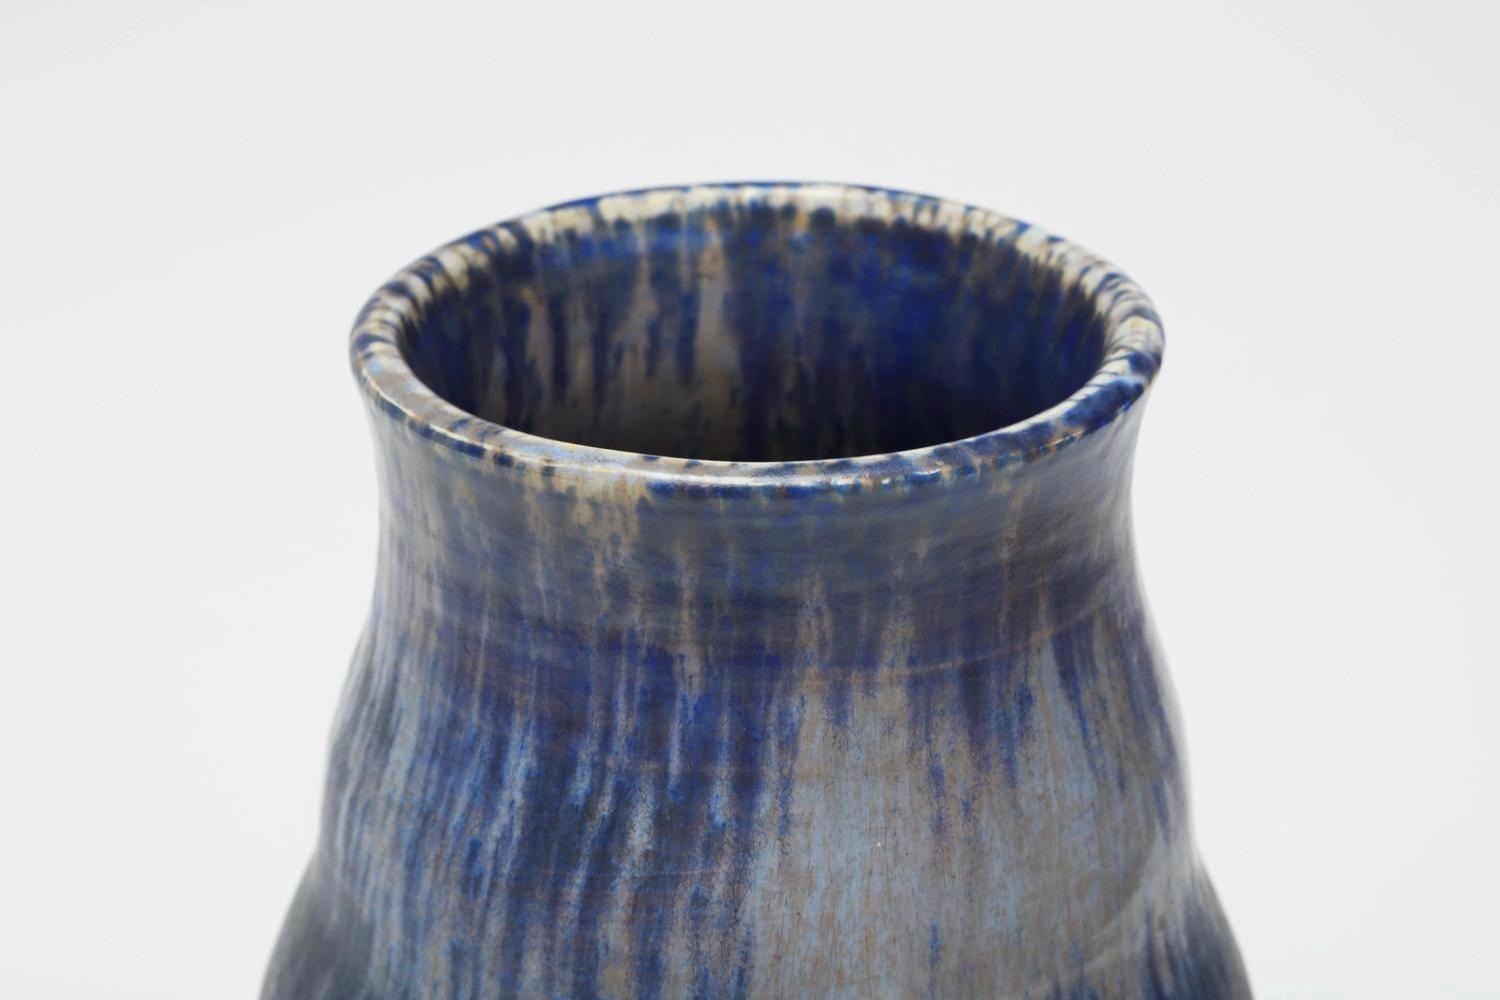 Die Keramikvase von Ruskin Pottery ist aus handgedrehtem, tropfglasiertem Steinzeug hergestellt. Eingedruckte Signatur und Datum auf der Unterseite: [Ruskin England 1927].

Über das Studio:
